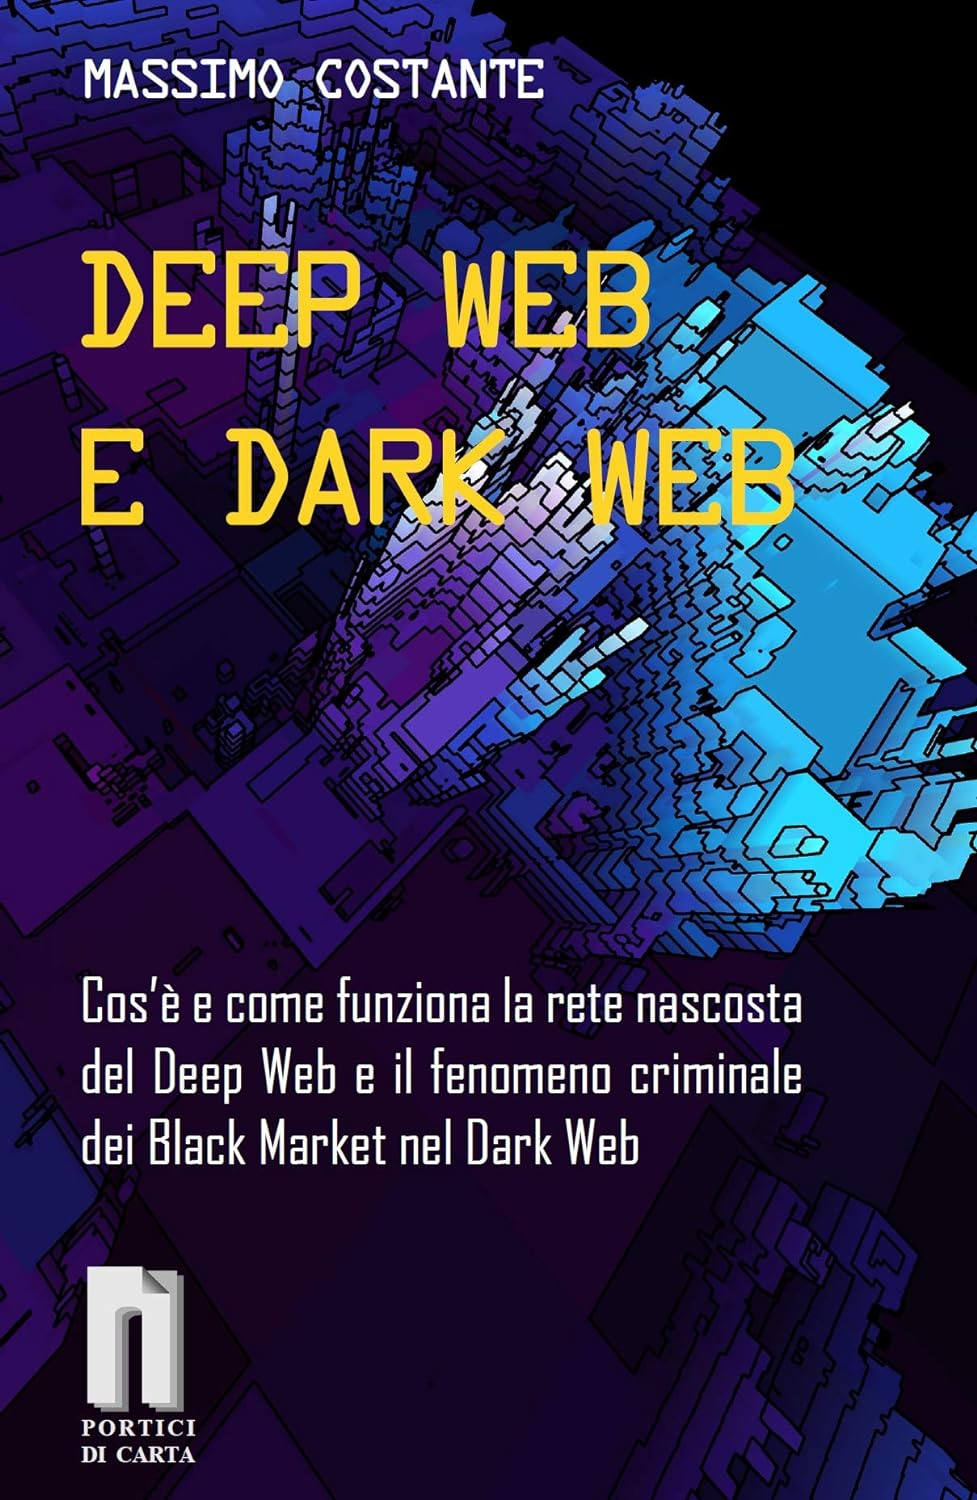 Deep Web e Dark Web (Italiano language, Portici di Carta)